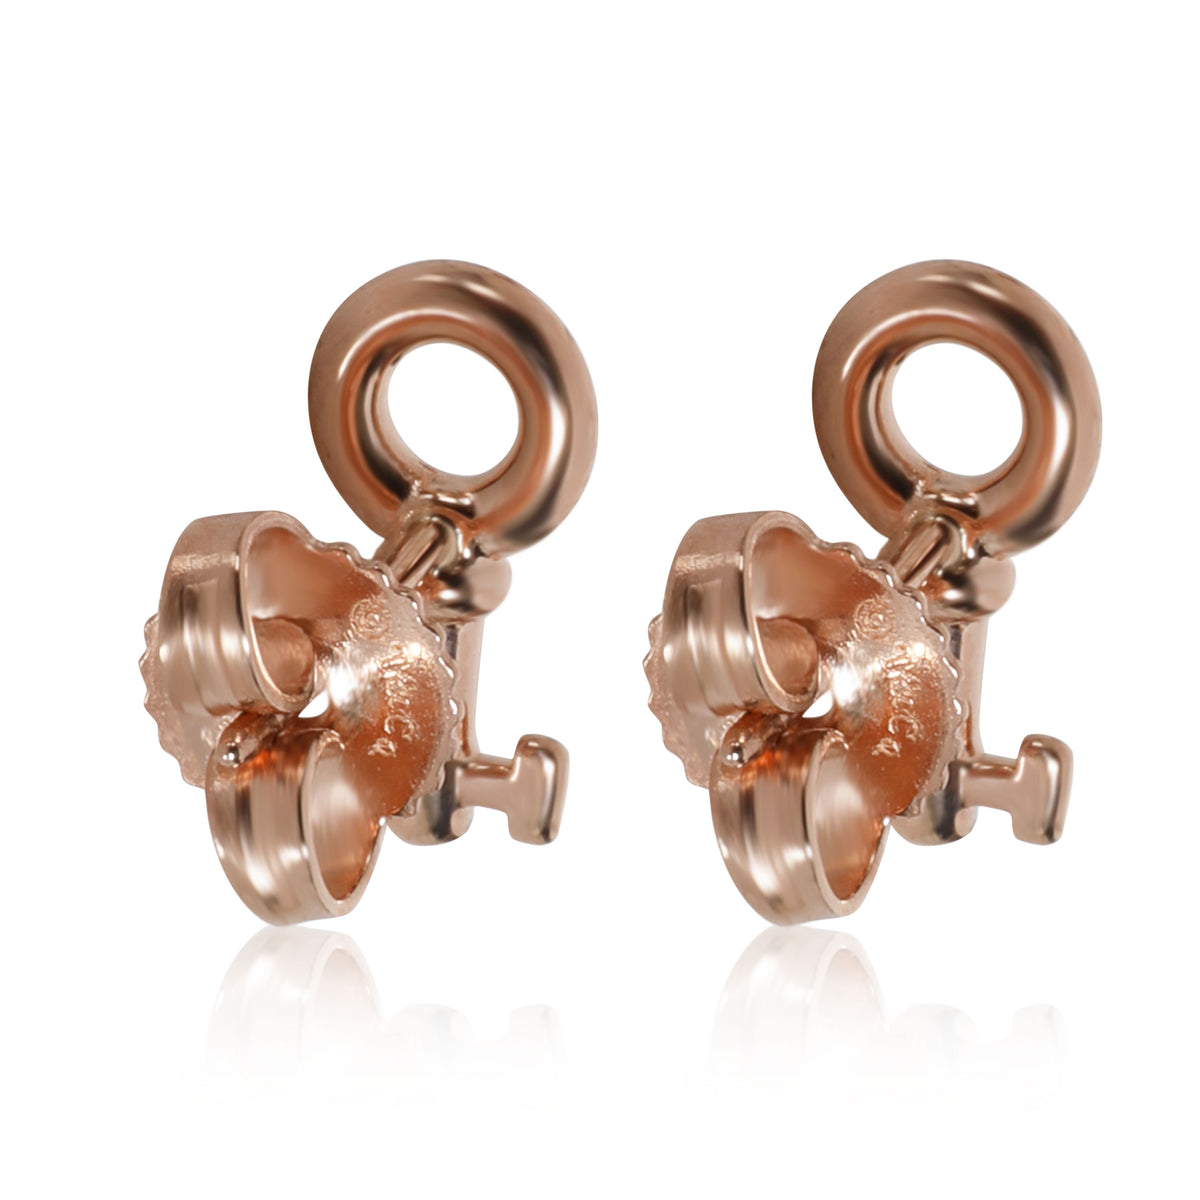 Tiffany & Co. Keys Stud Earring in 18K Rose Gold